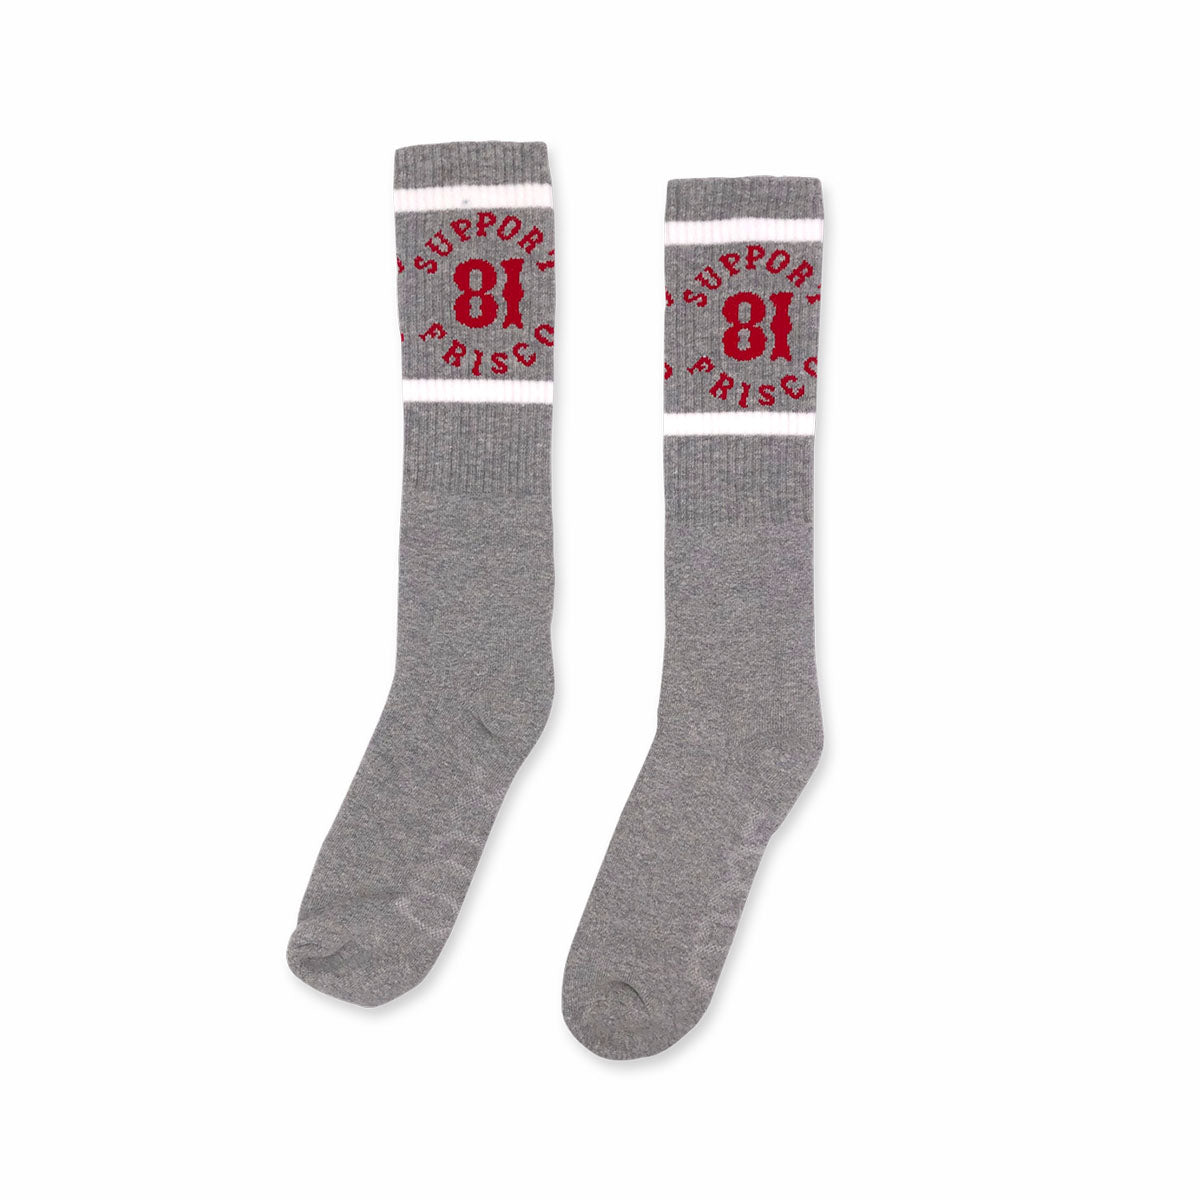 Support 81 Gray Socks